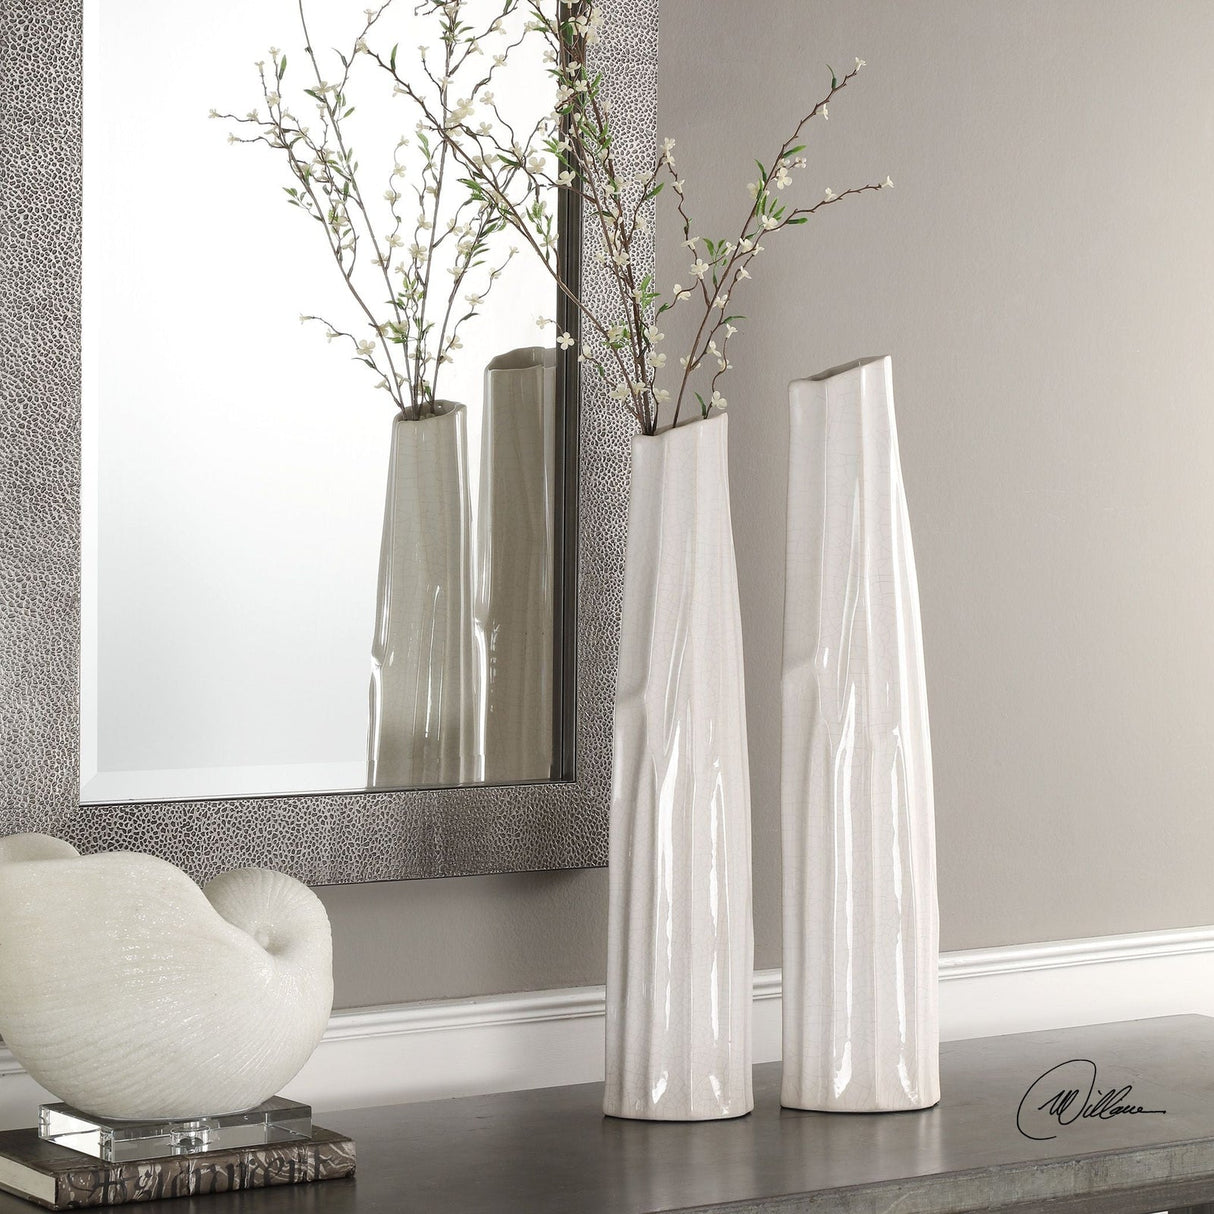 Uttermost Kenley Crackled White Vases - Set Of 2 - Home Elegance USA